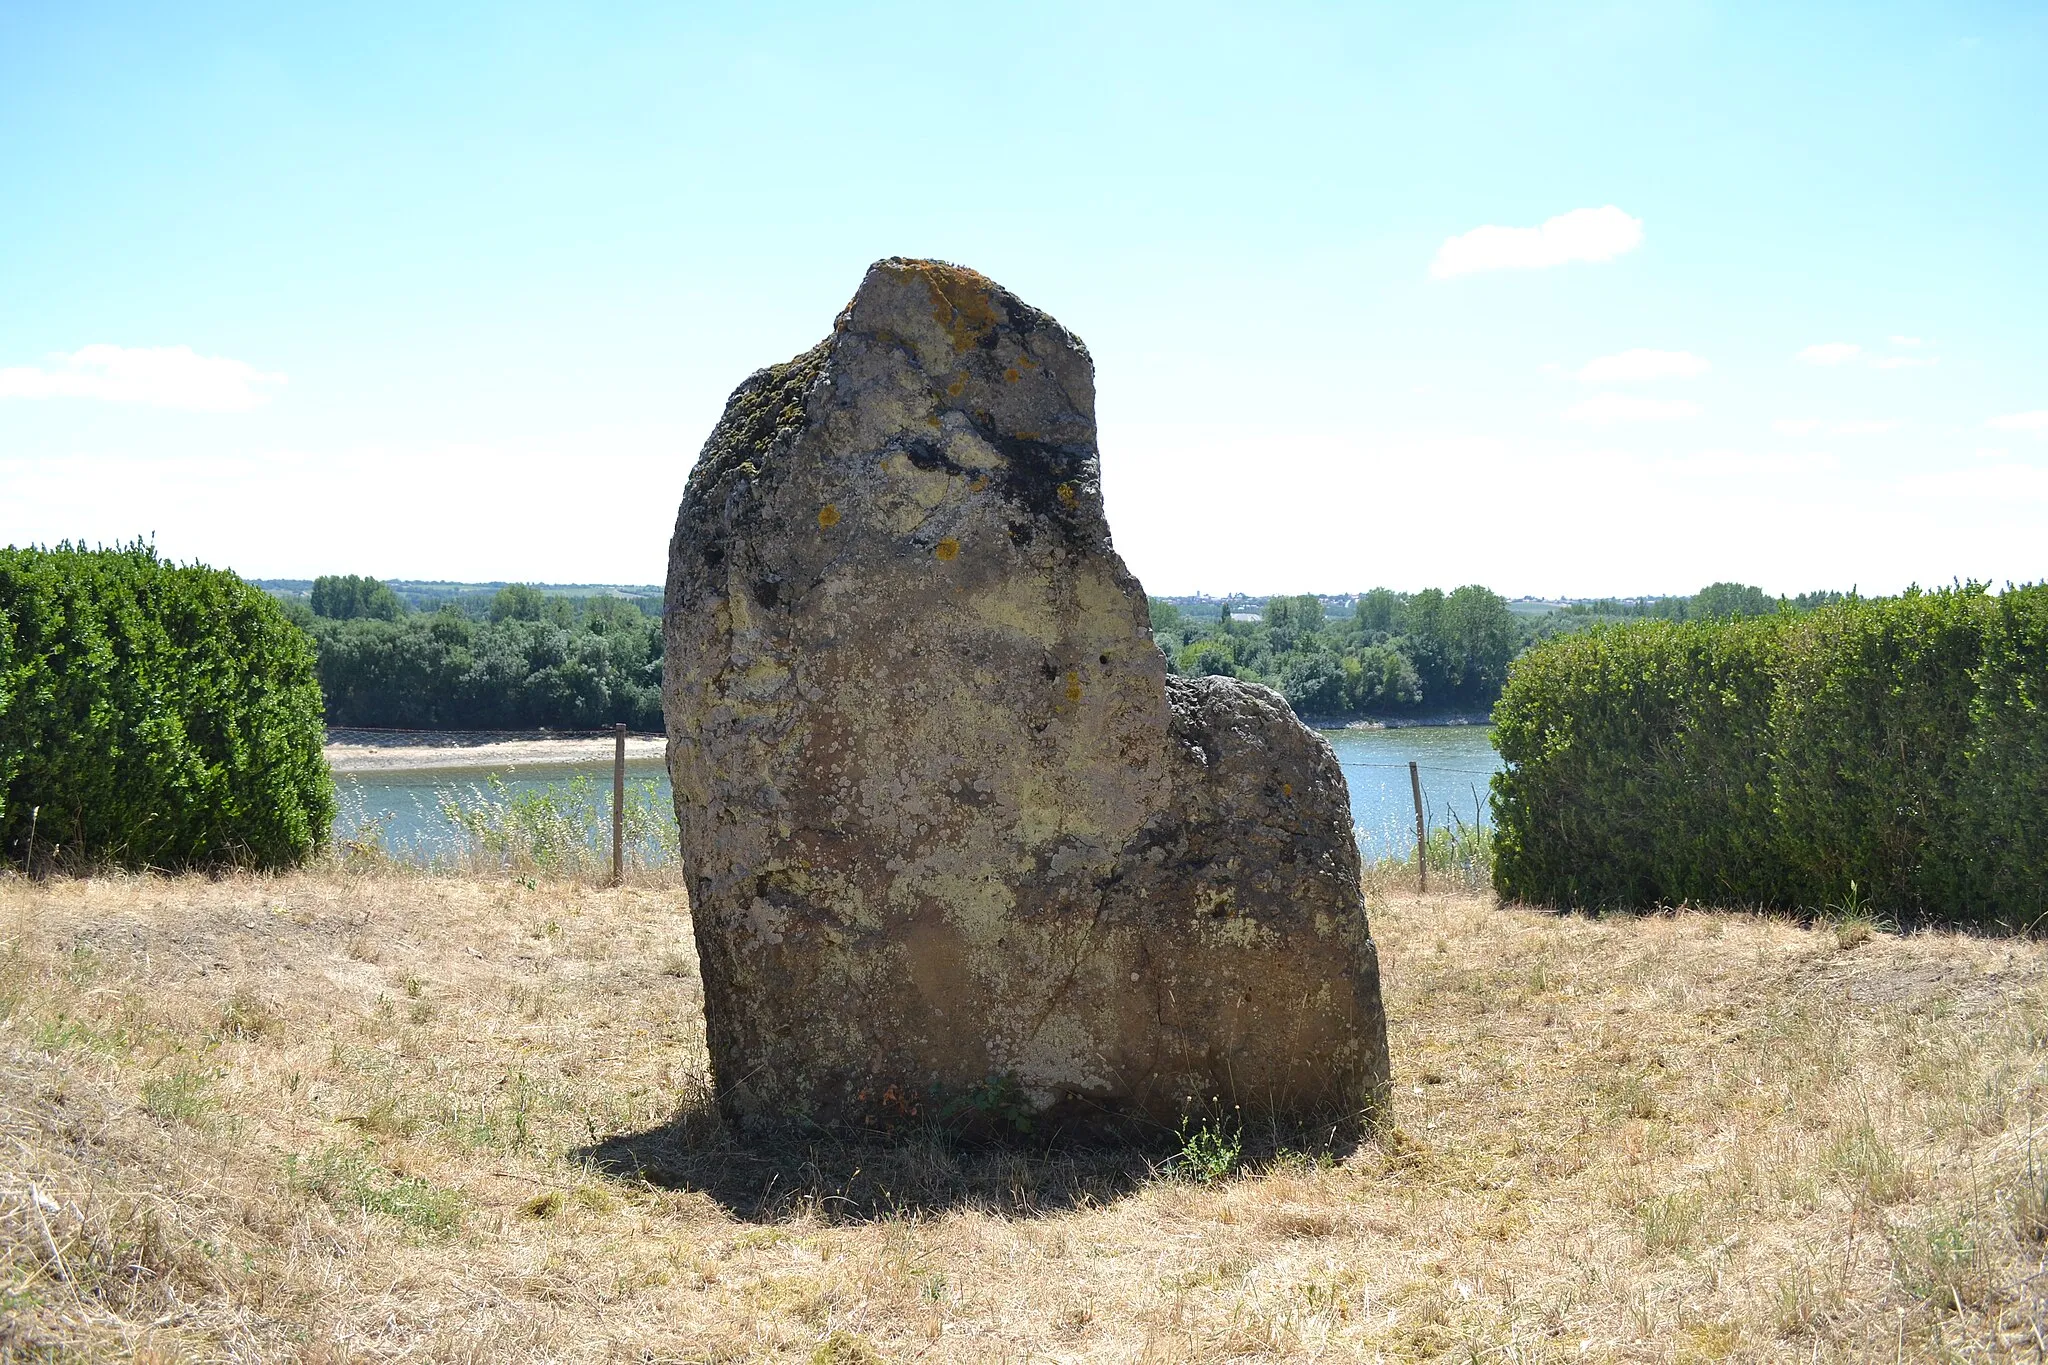 Image of Pays de la Loire